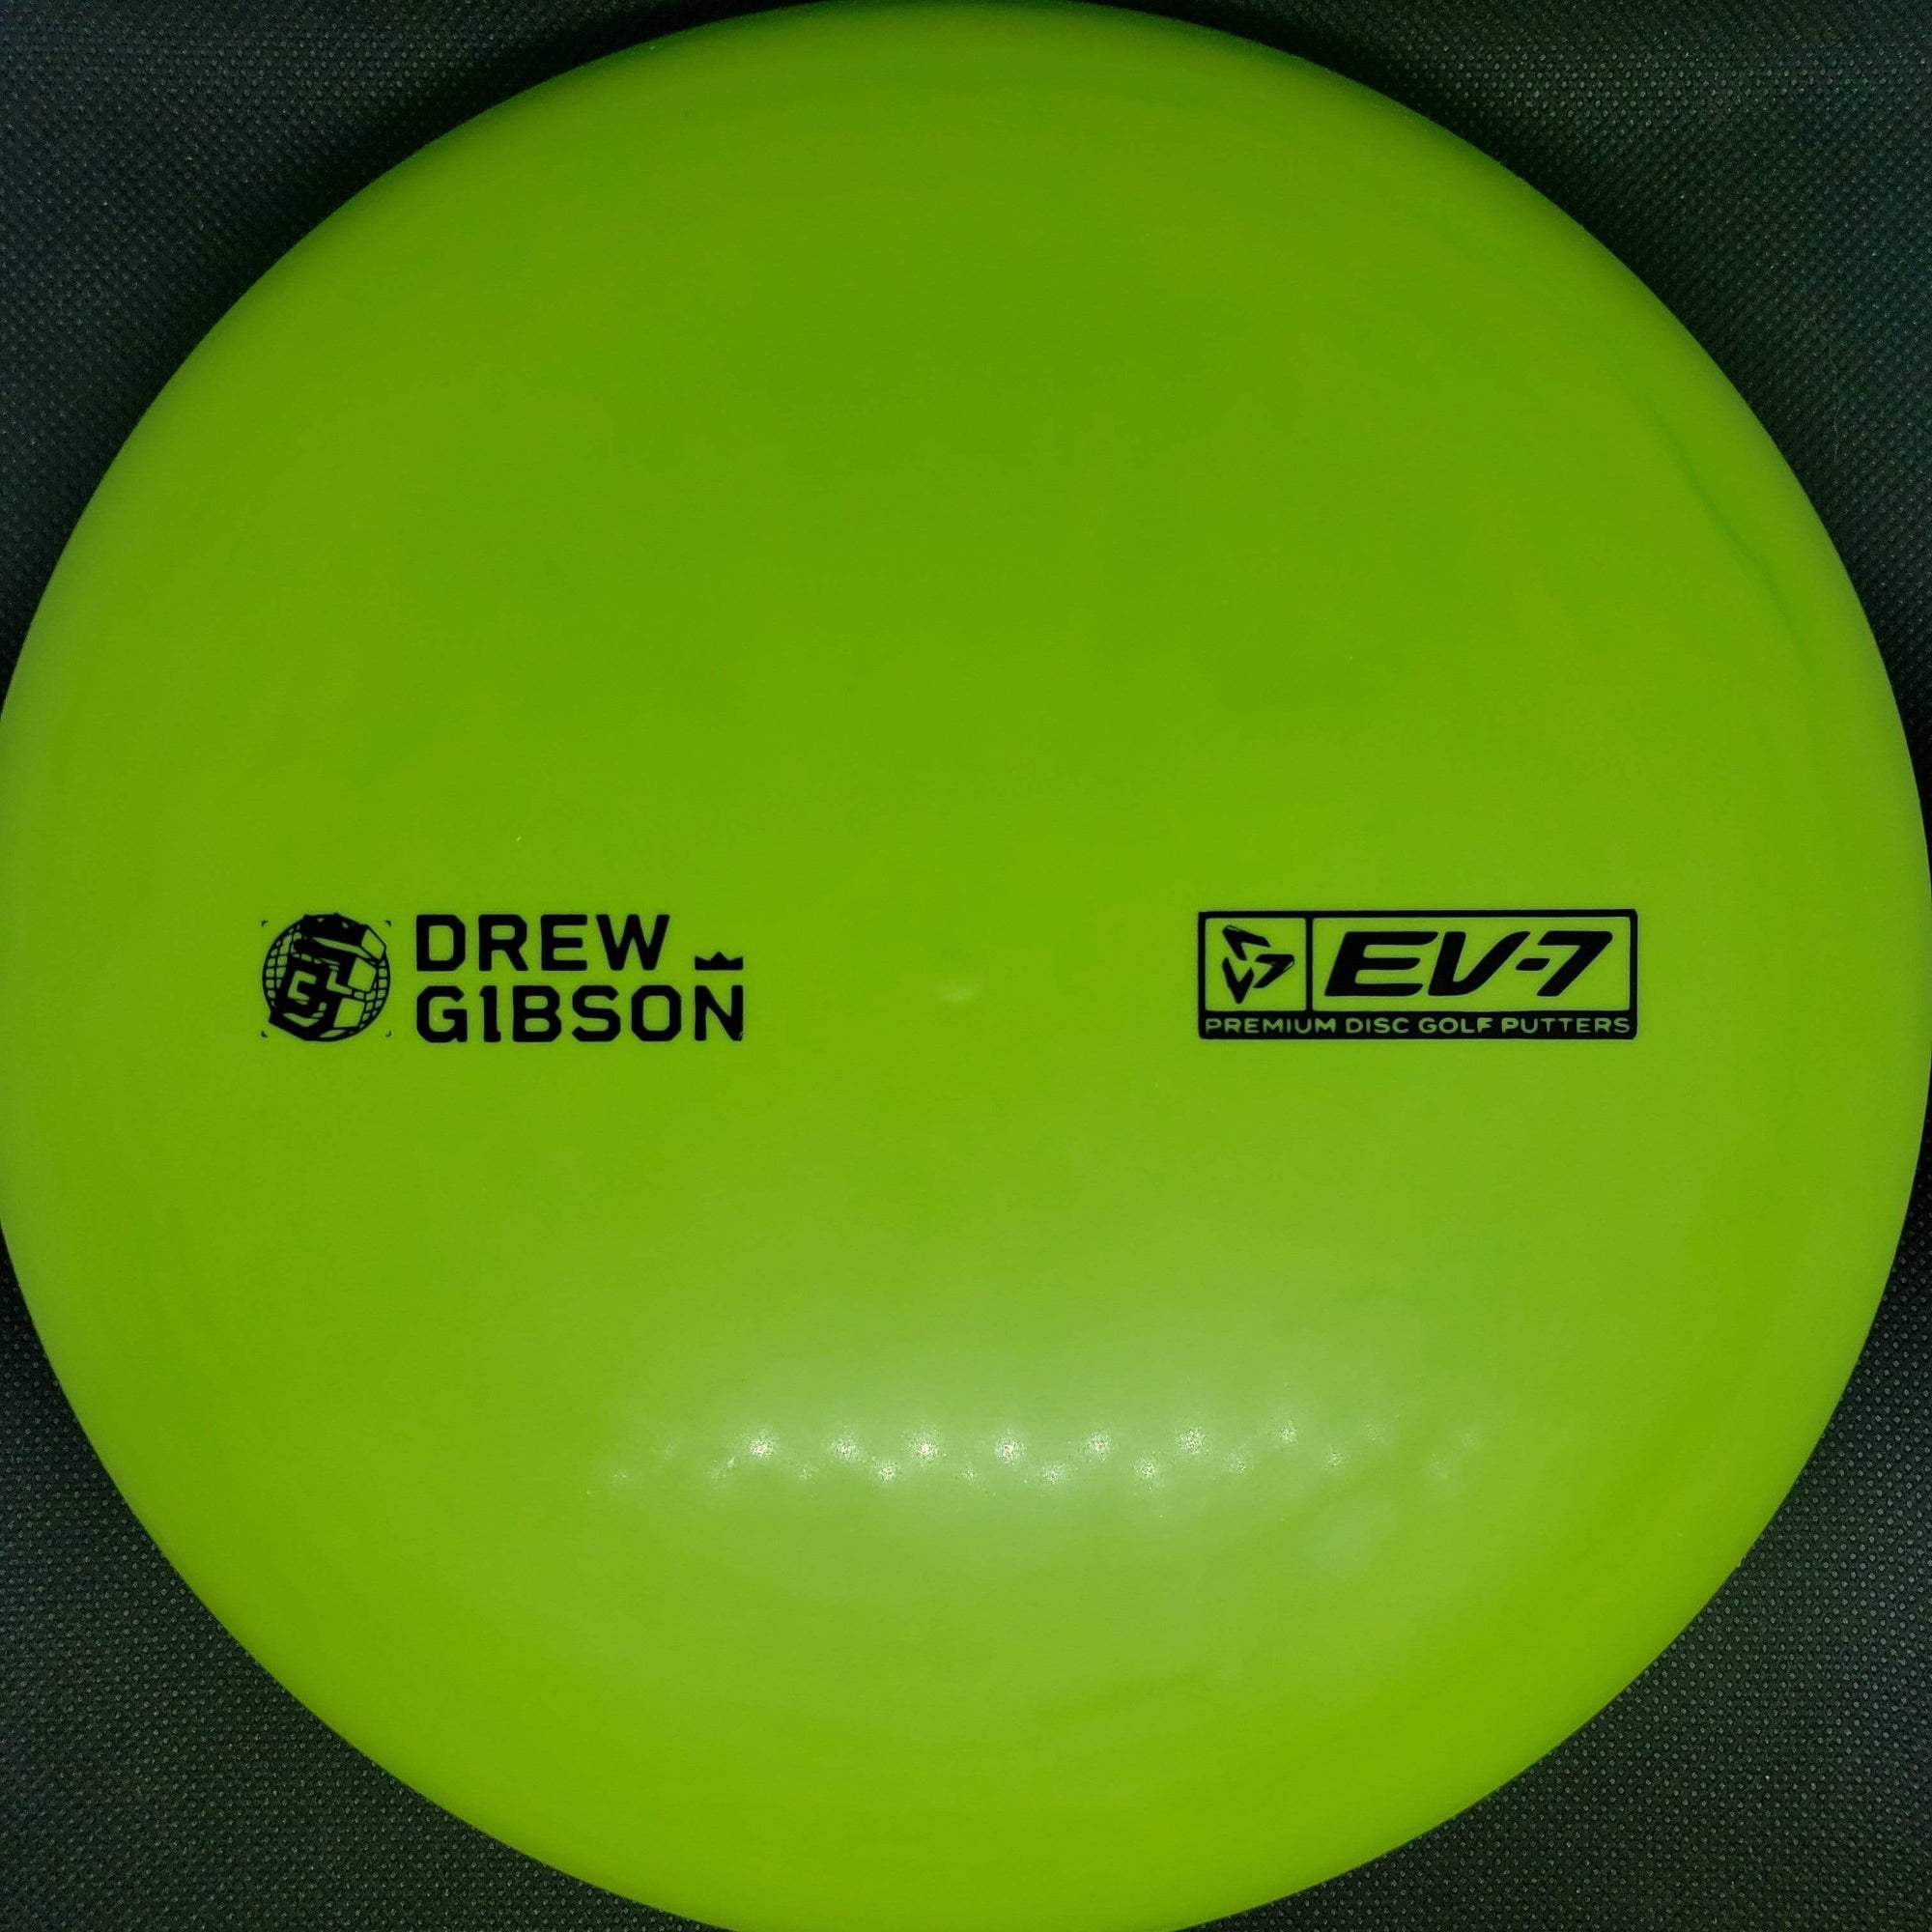 Ev7 Putter Green 173g Drew Gibson Penrose - OG Medium